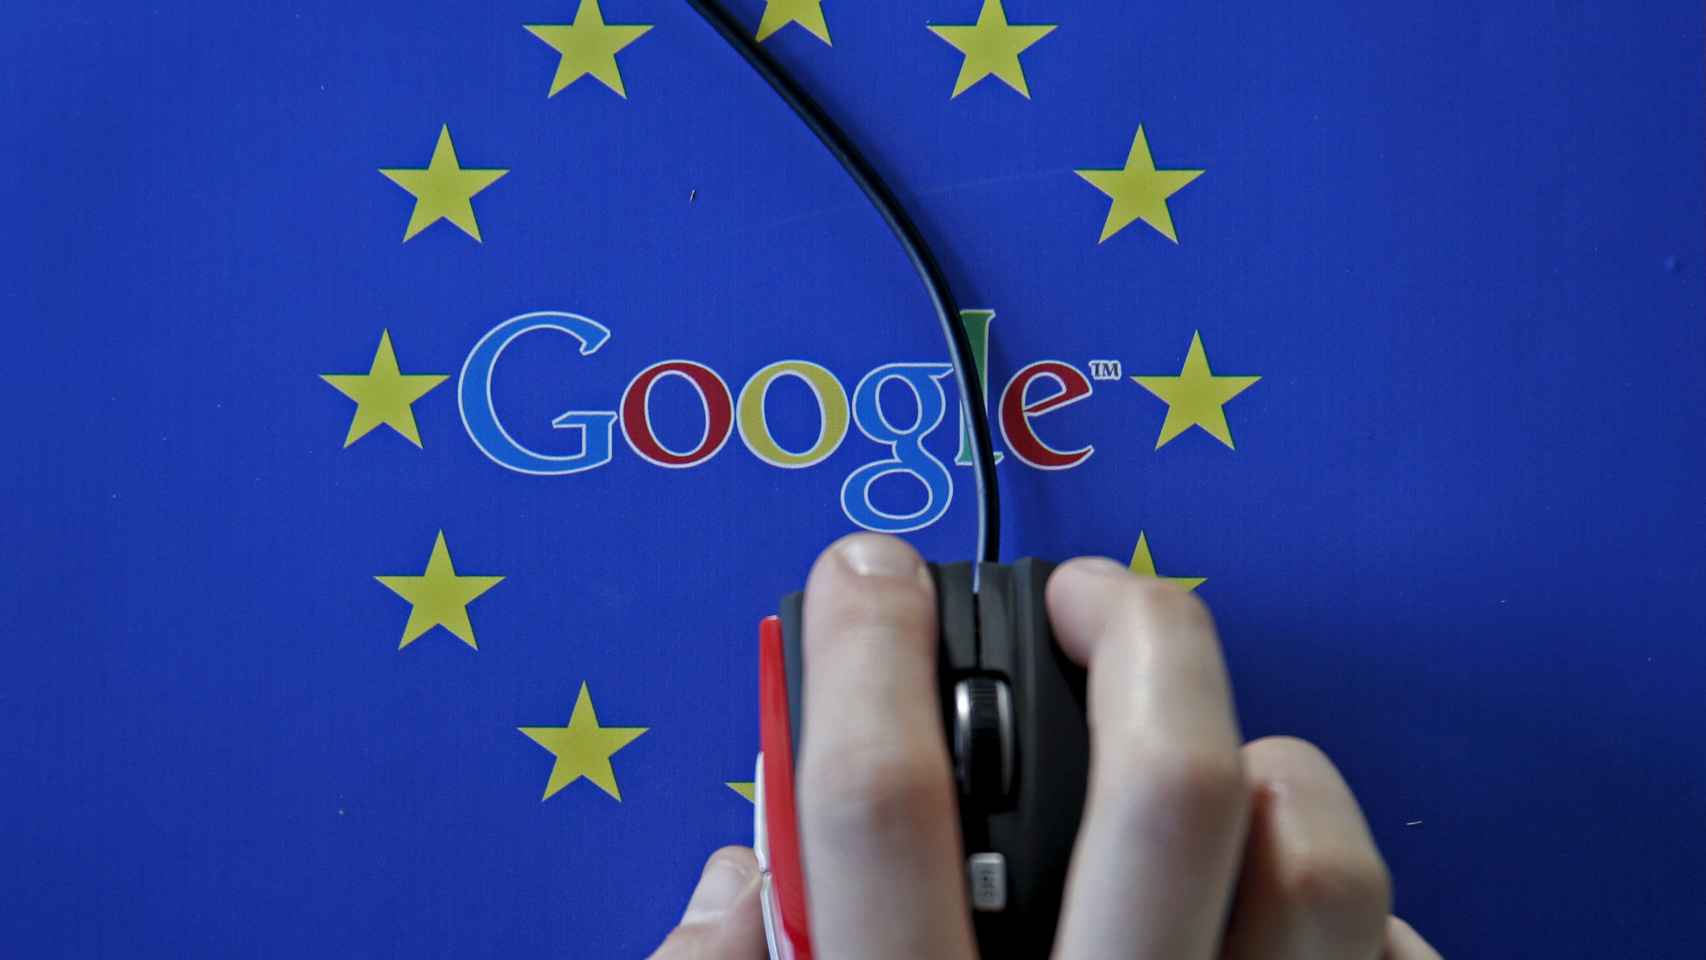 Google, una de las empresas señaladas por la UE por la utilización de nuestros datos.